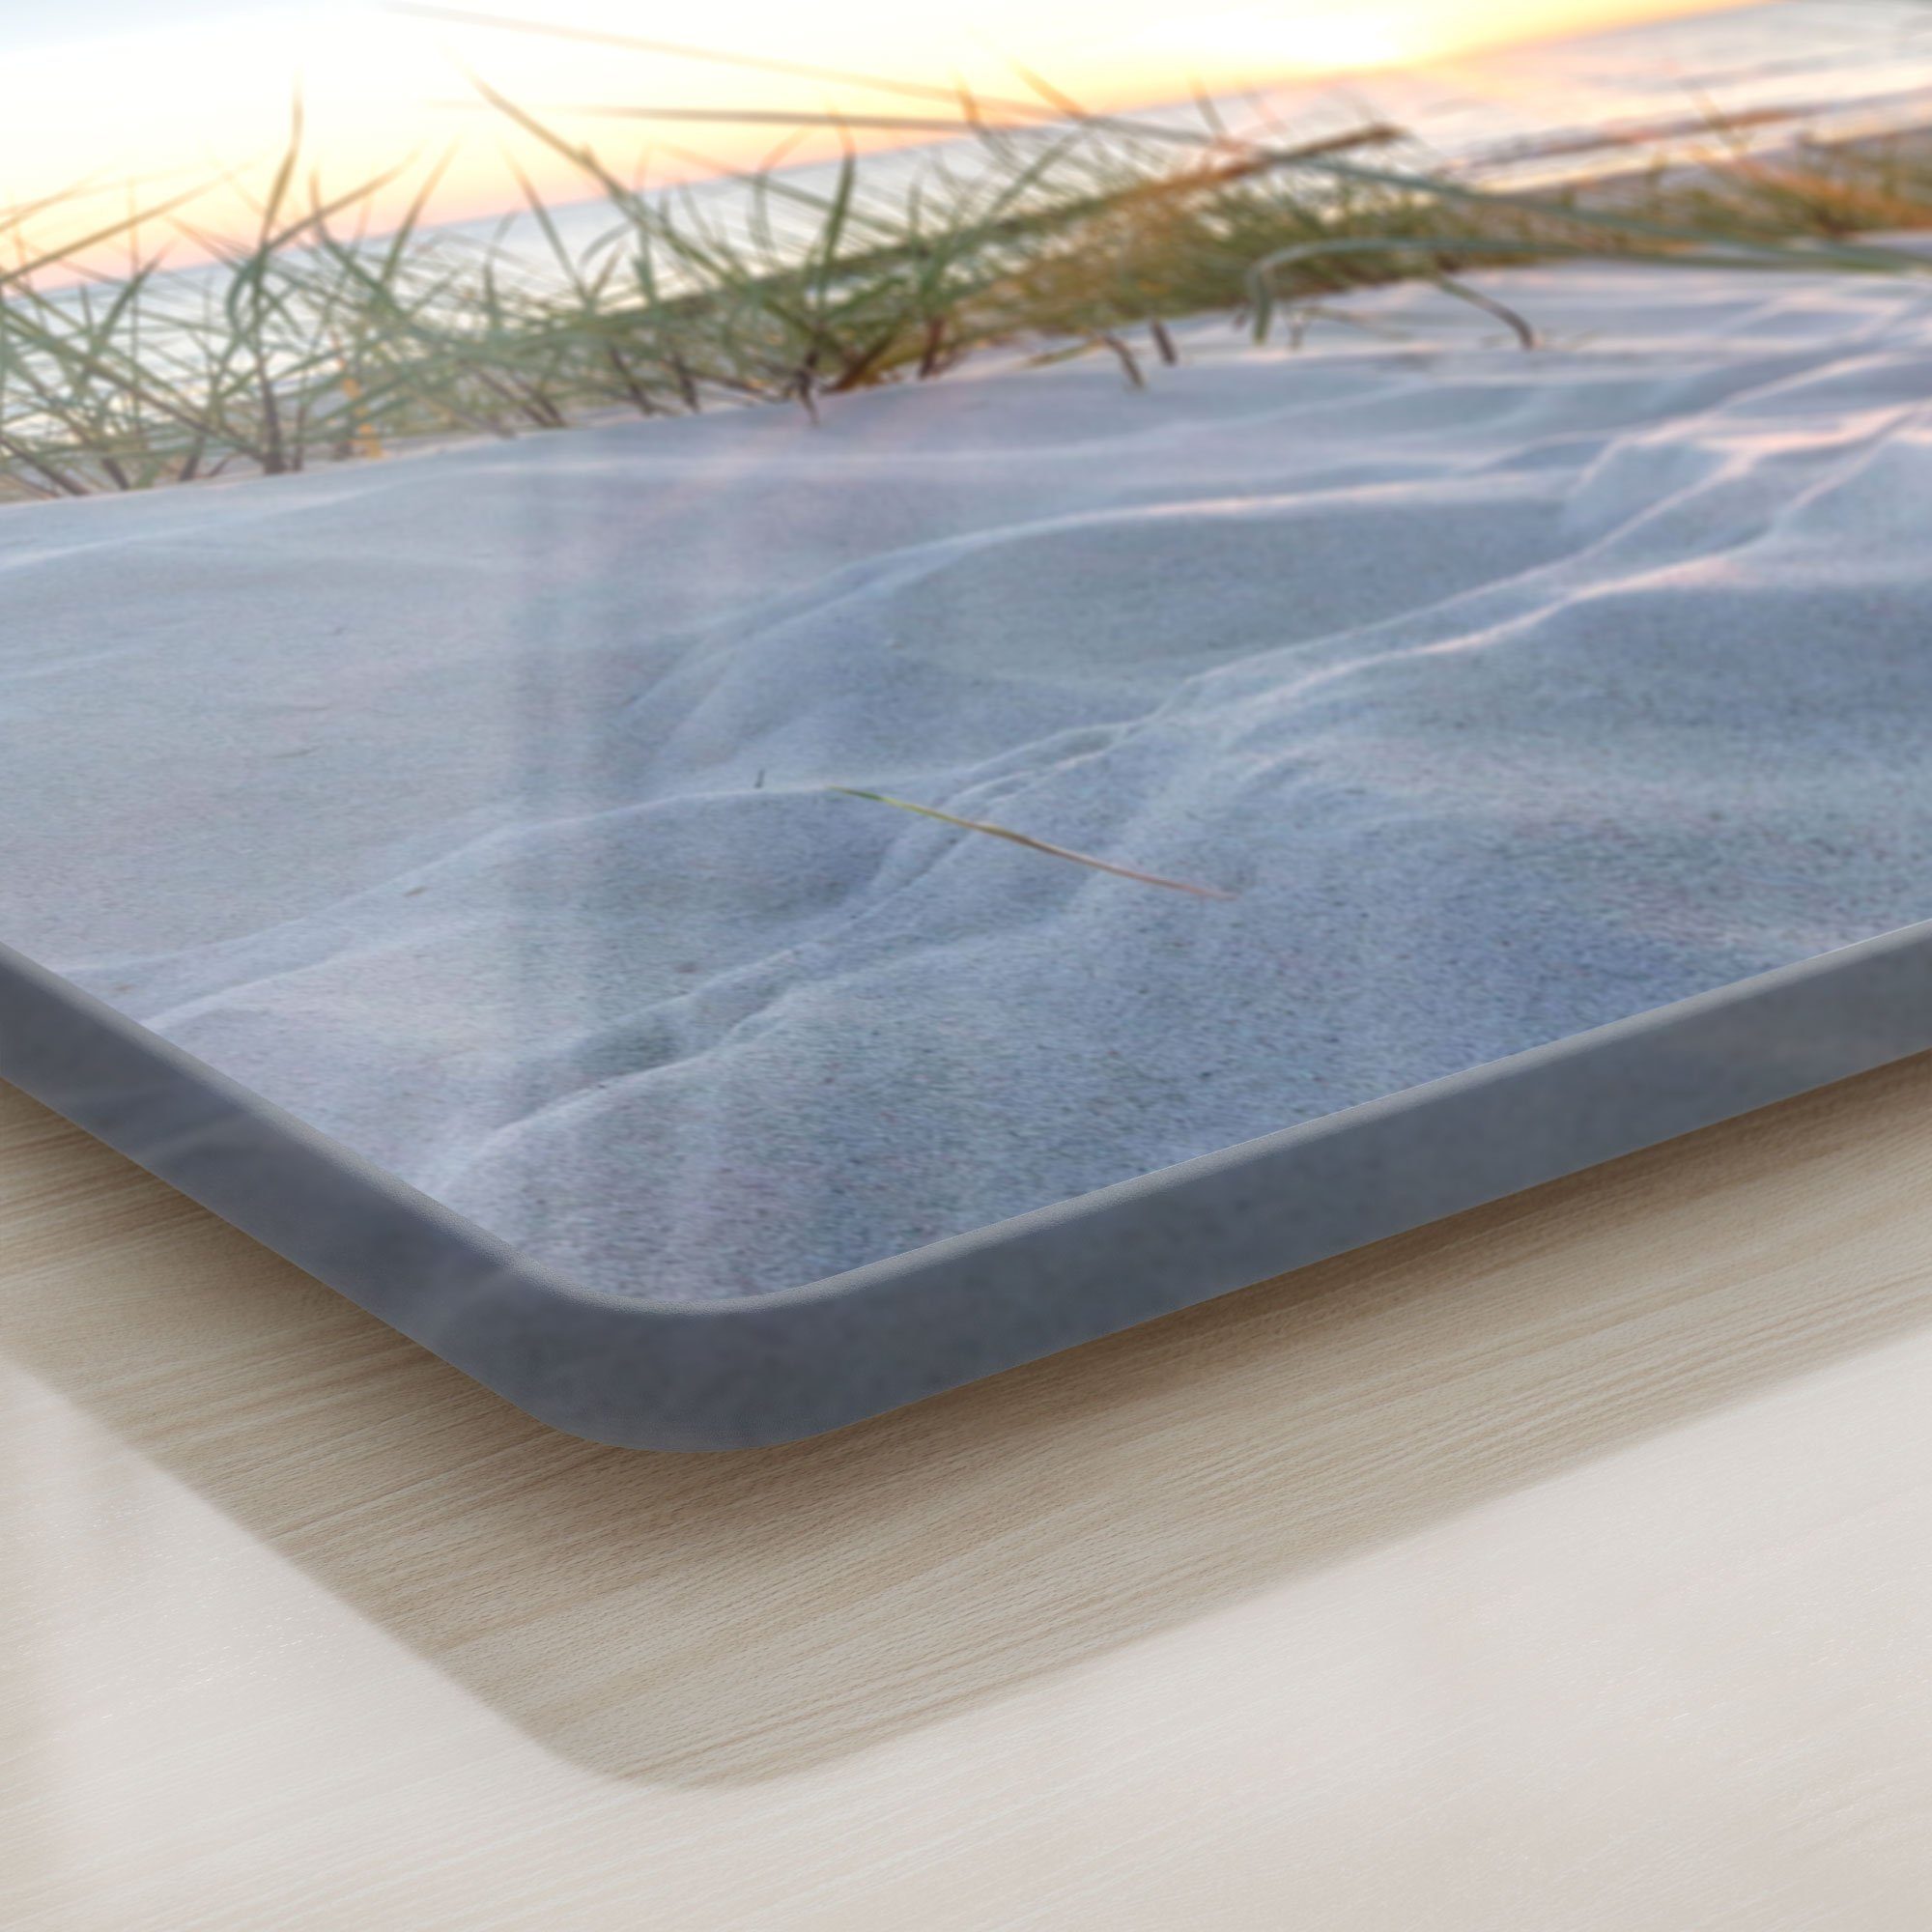 Schneidebrett Sonnenuntergang', 'Ostsee Schneideplatte Platte Glas, Frühstücksbrett DEQORI